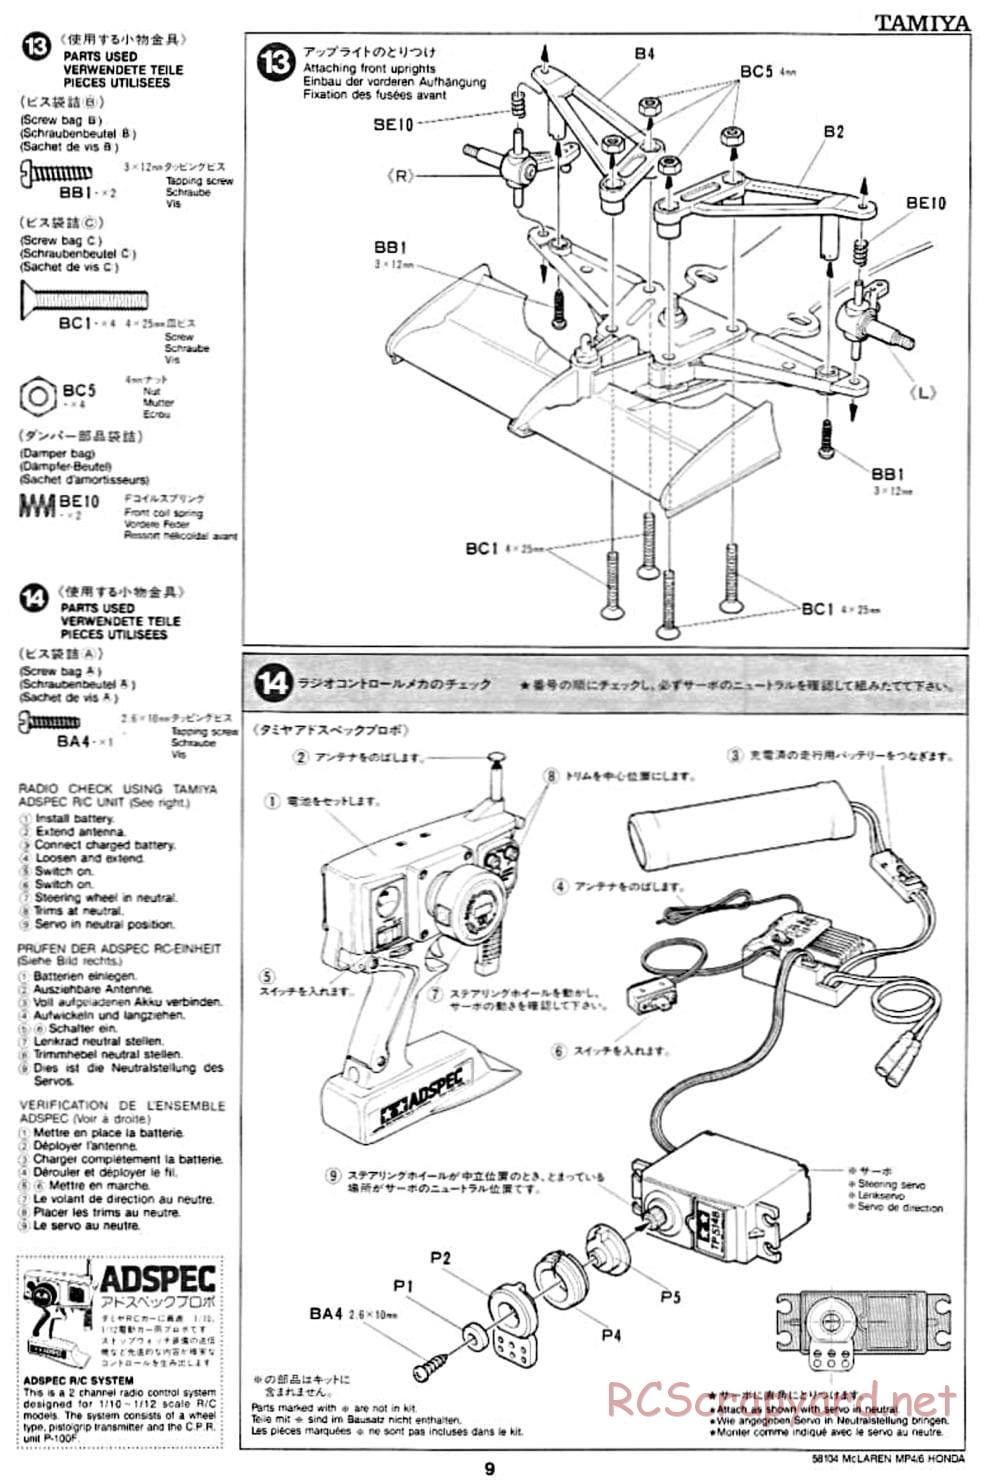 Tamiya - McLaren MP4/6 Honda - F102 Chassis - Manual - Page 9